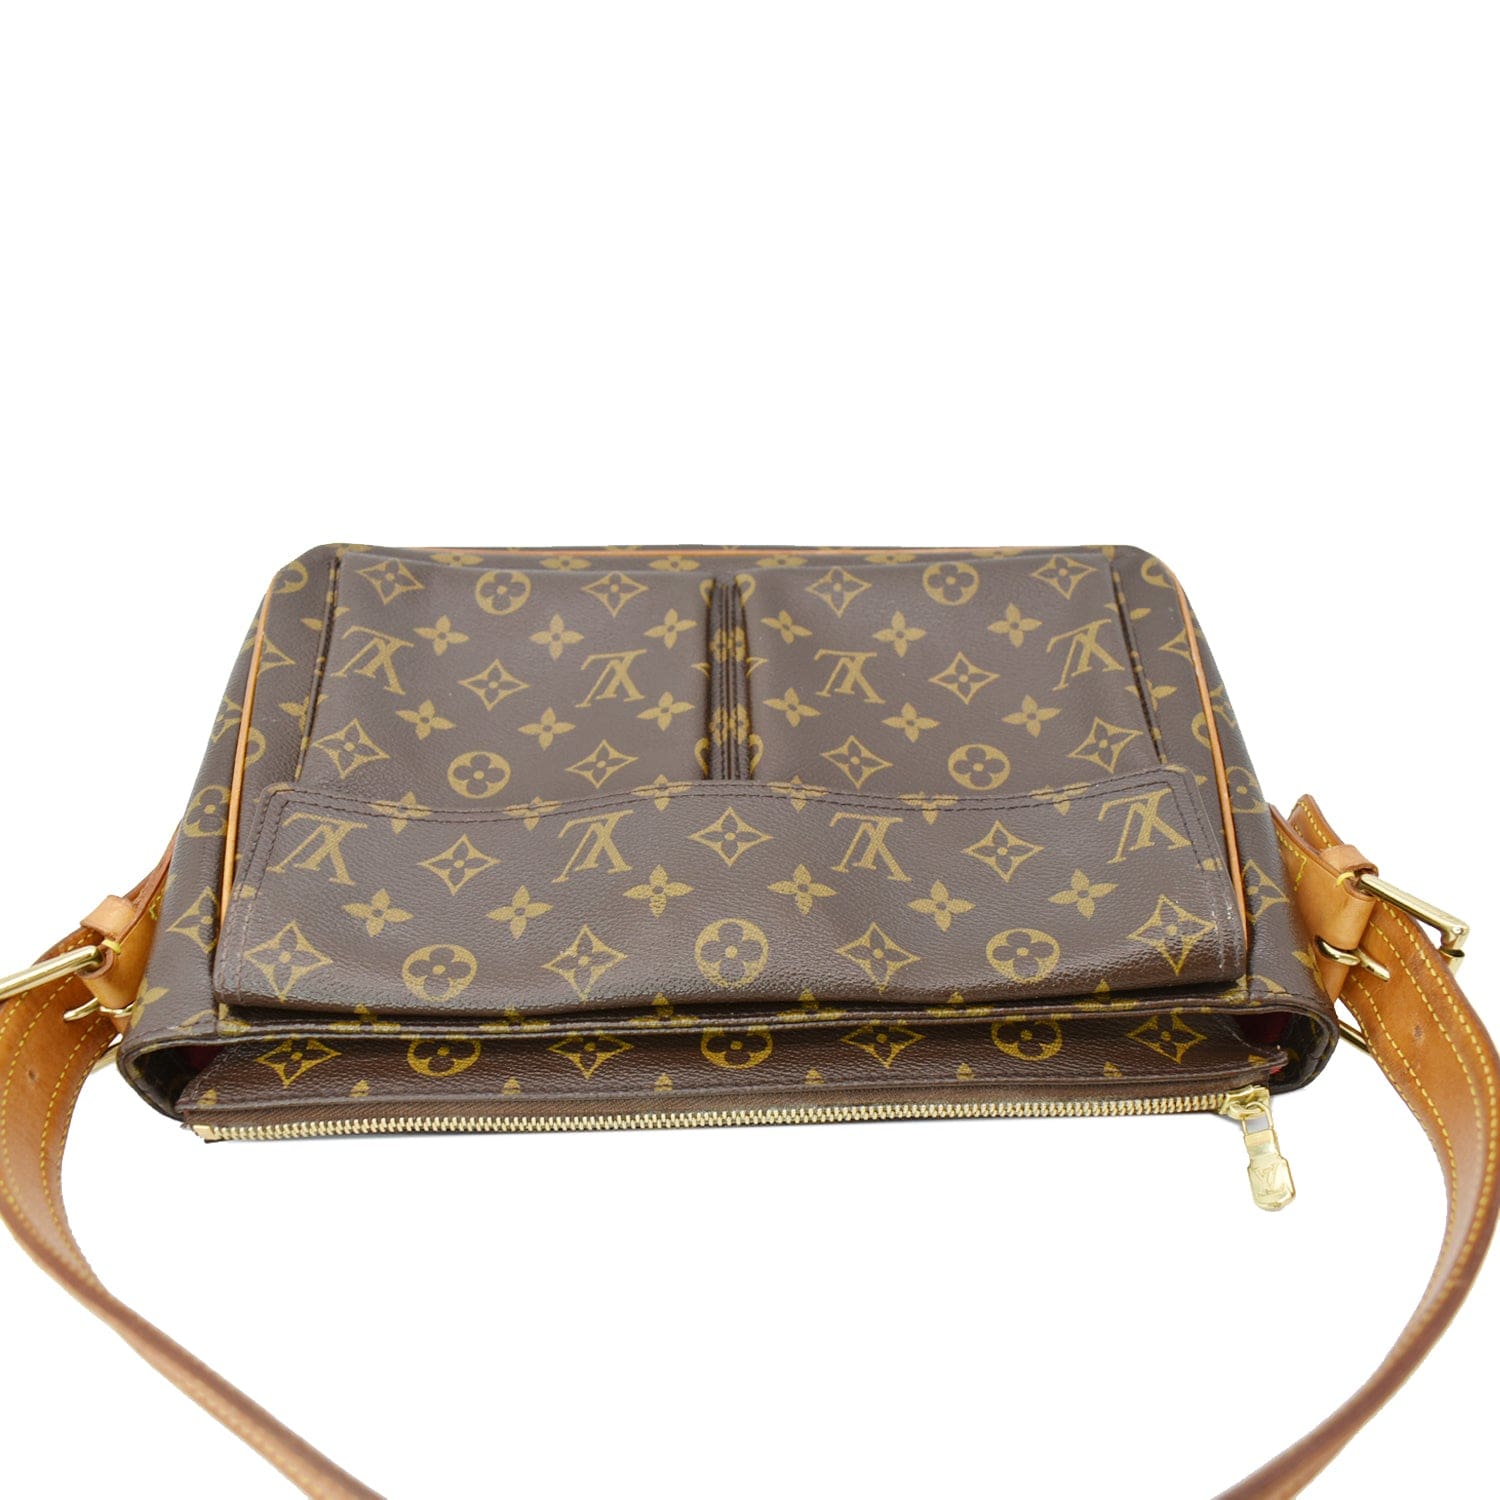 Louis Vuitton, Bags, Authentic Louis Vuitton Sac Vendome Shoulder Bag  Monogram Old Type